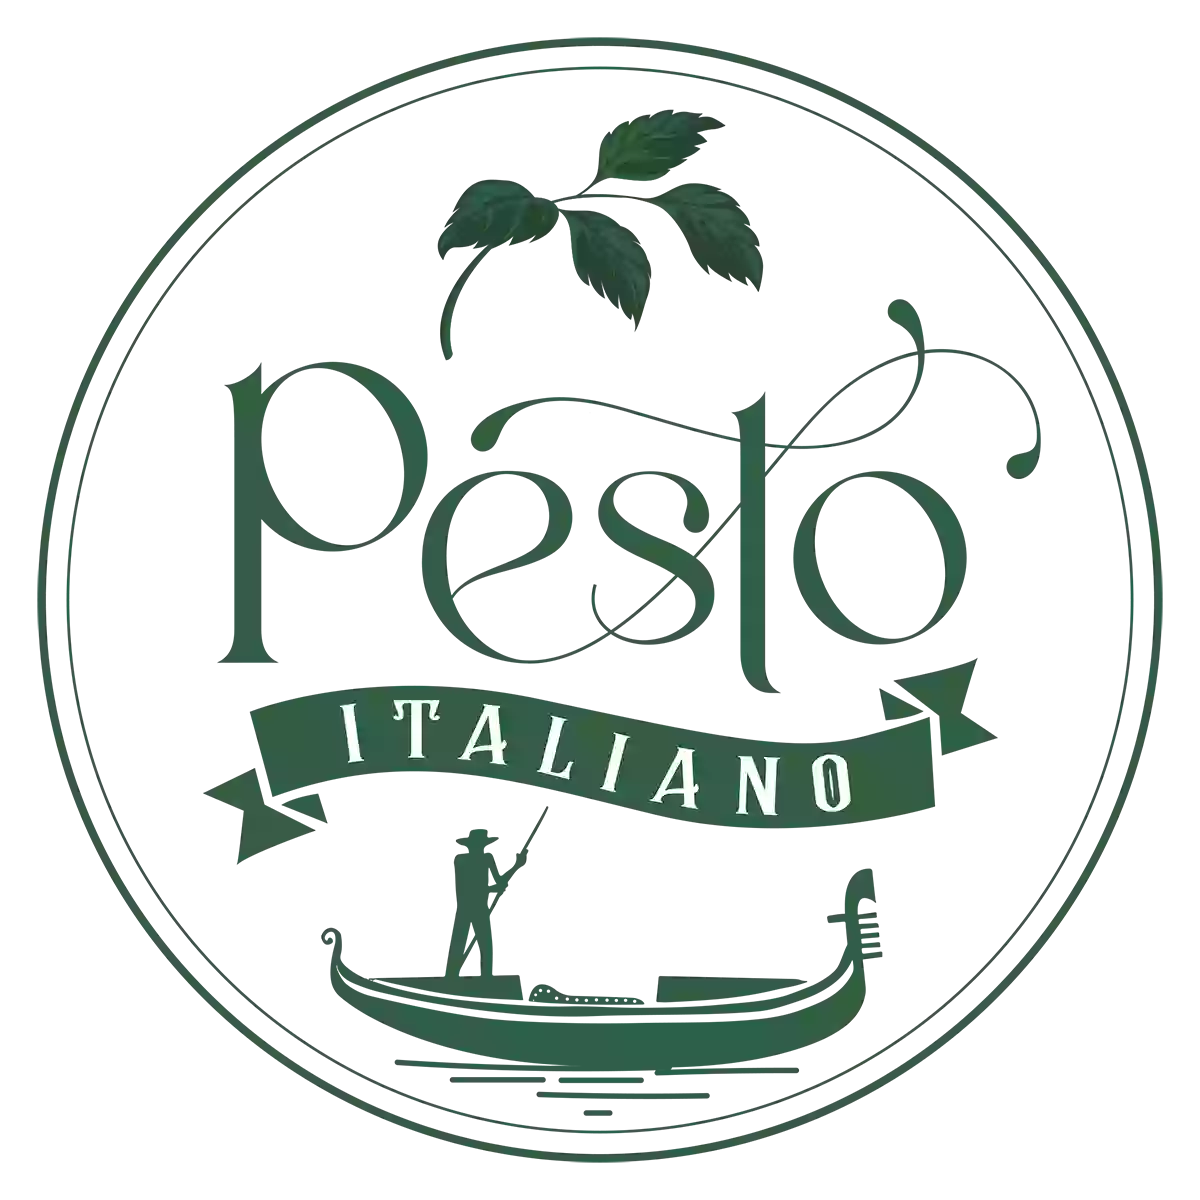 Pesto Italiano